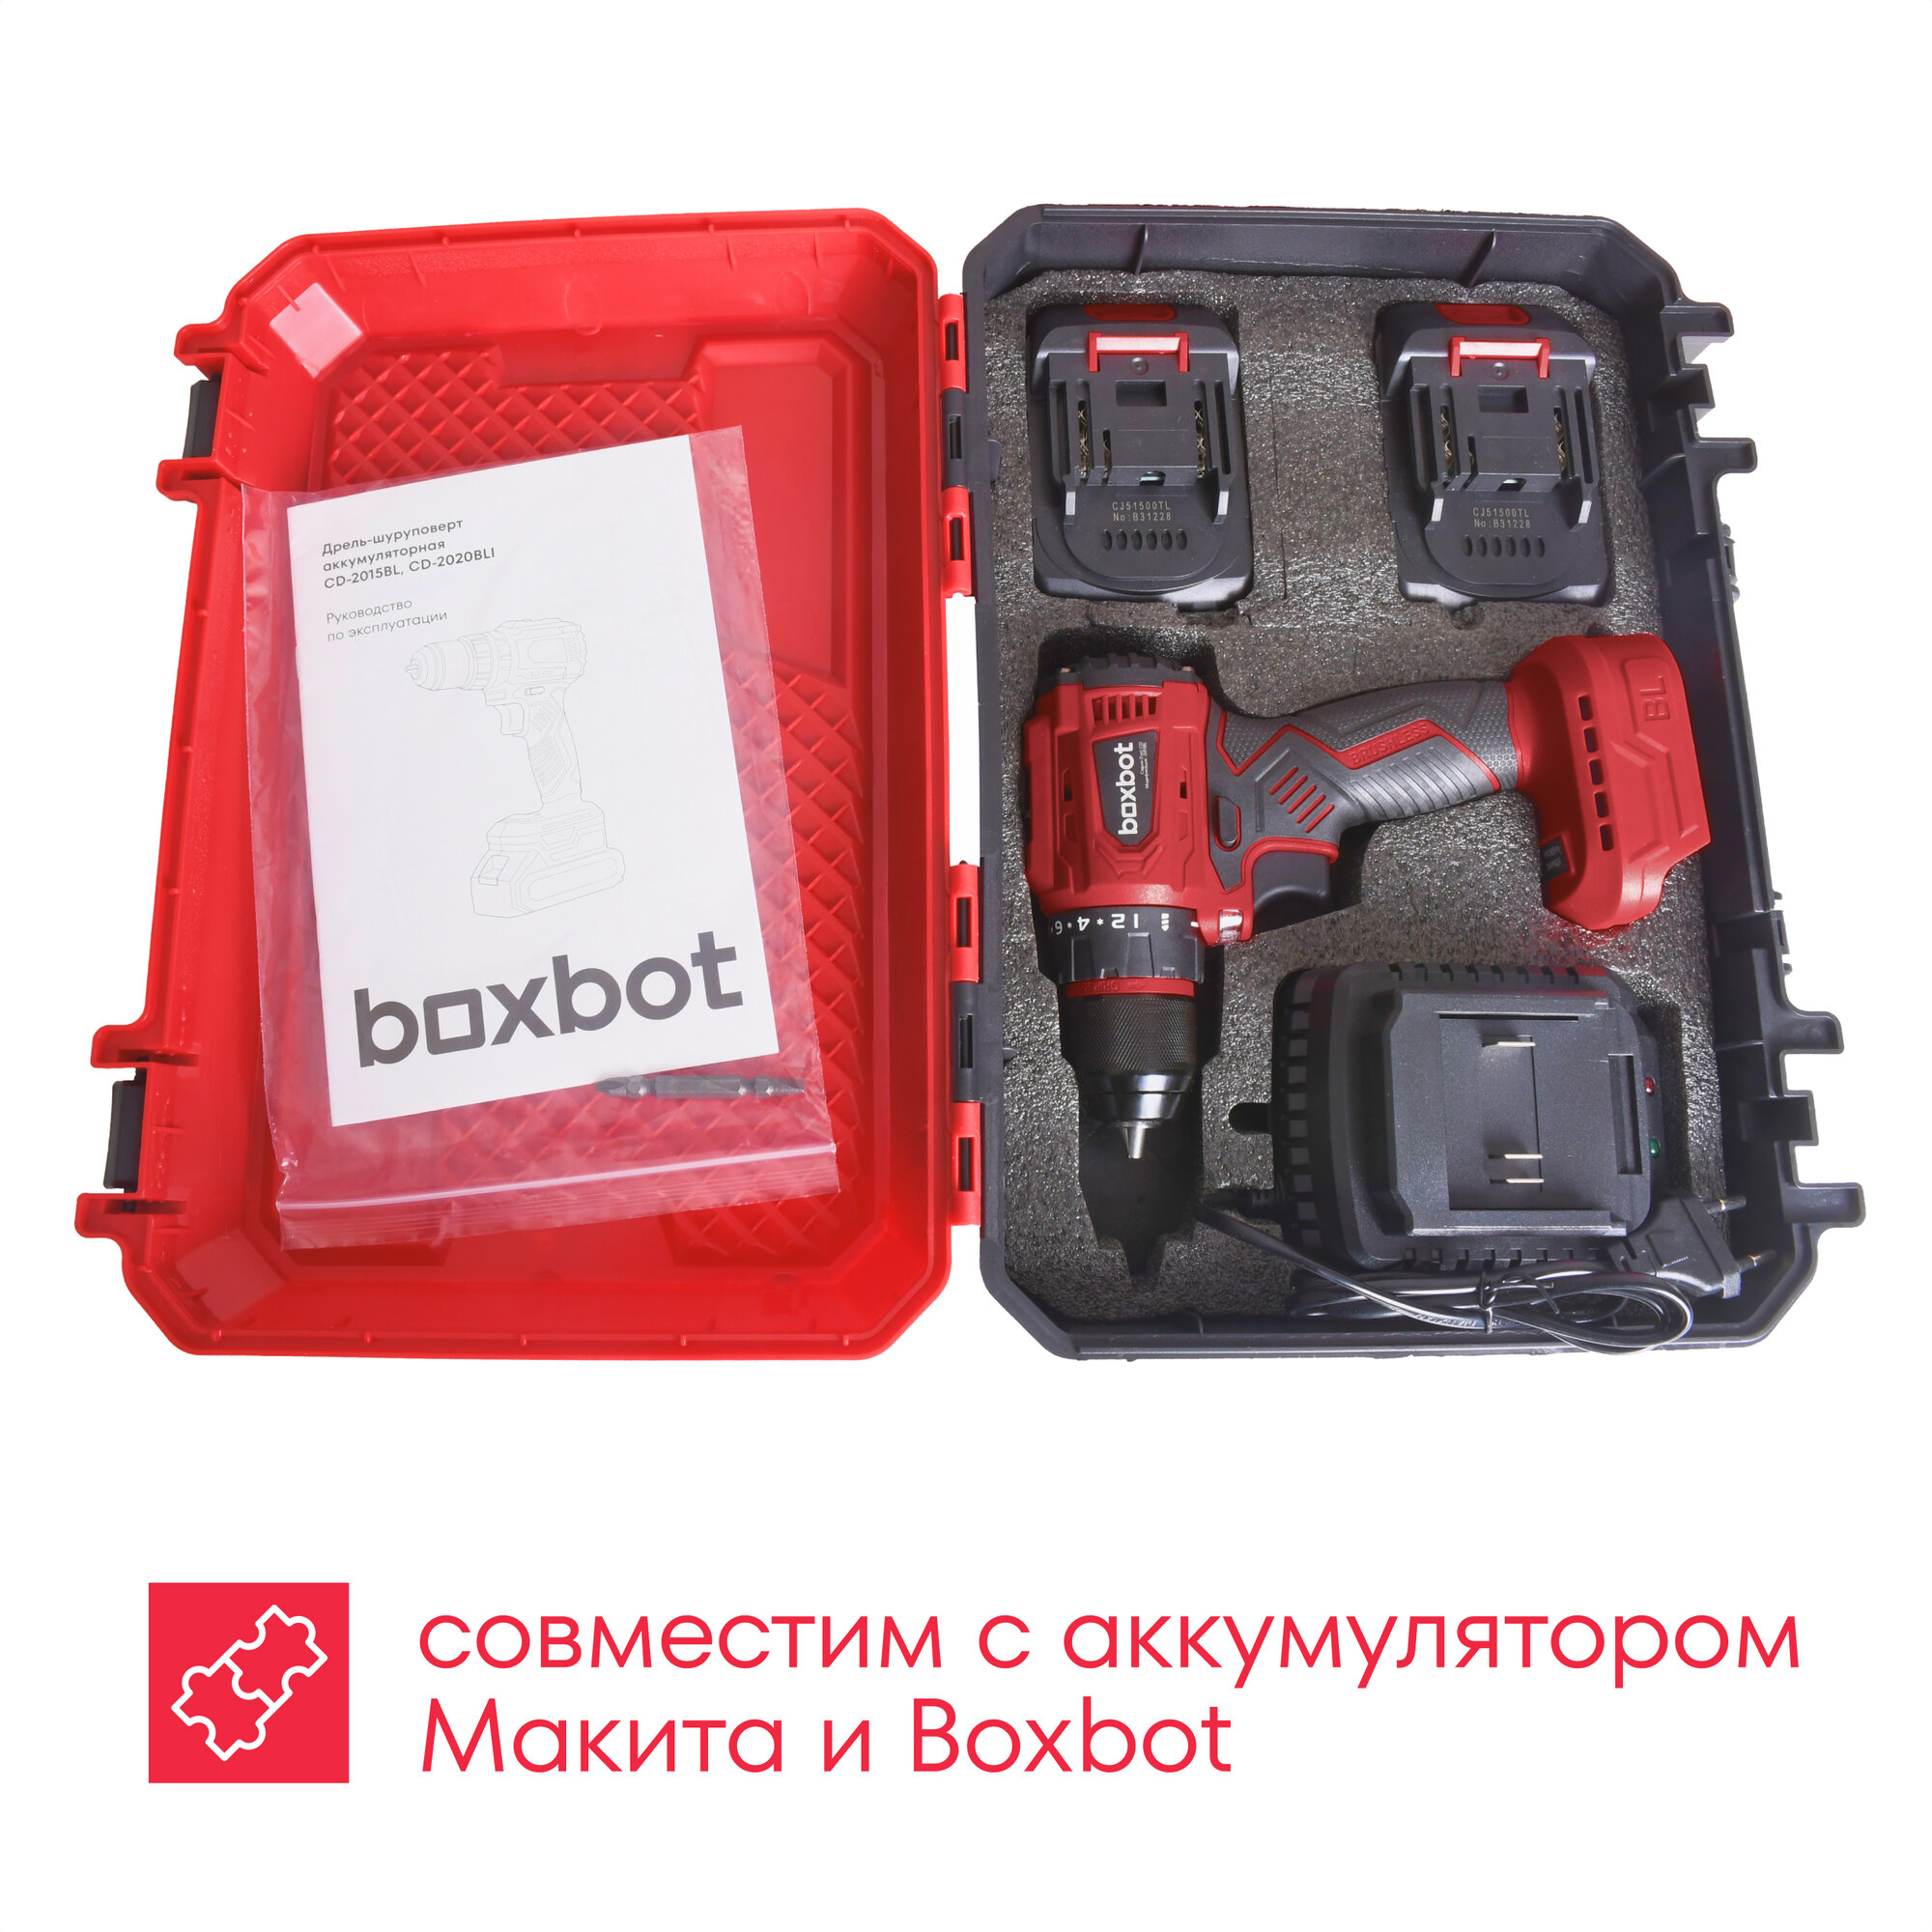 Аккумуляторная бесщеточная дрель-шуруповерт Boxbot 20В, 2 АКБ 1,5 Ач, в кейсе, CD-2015BL